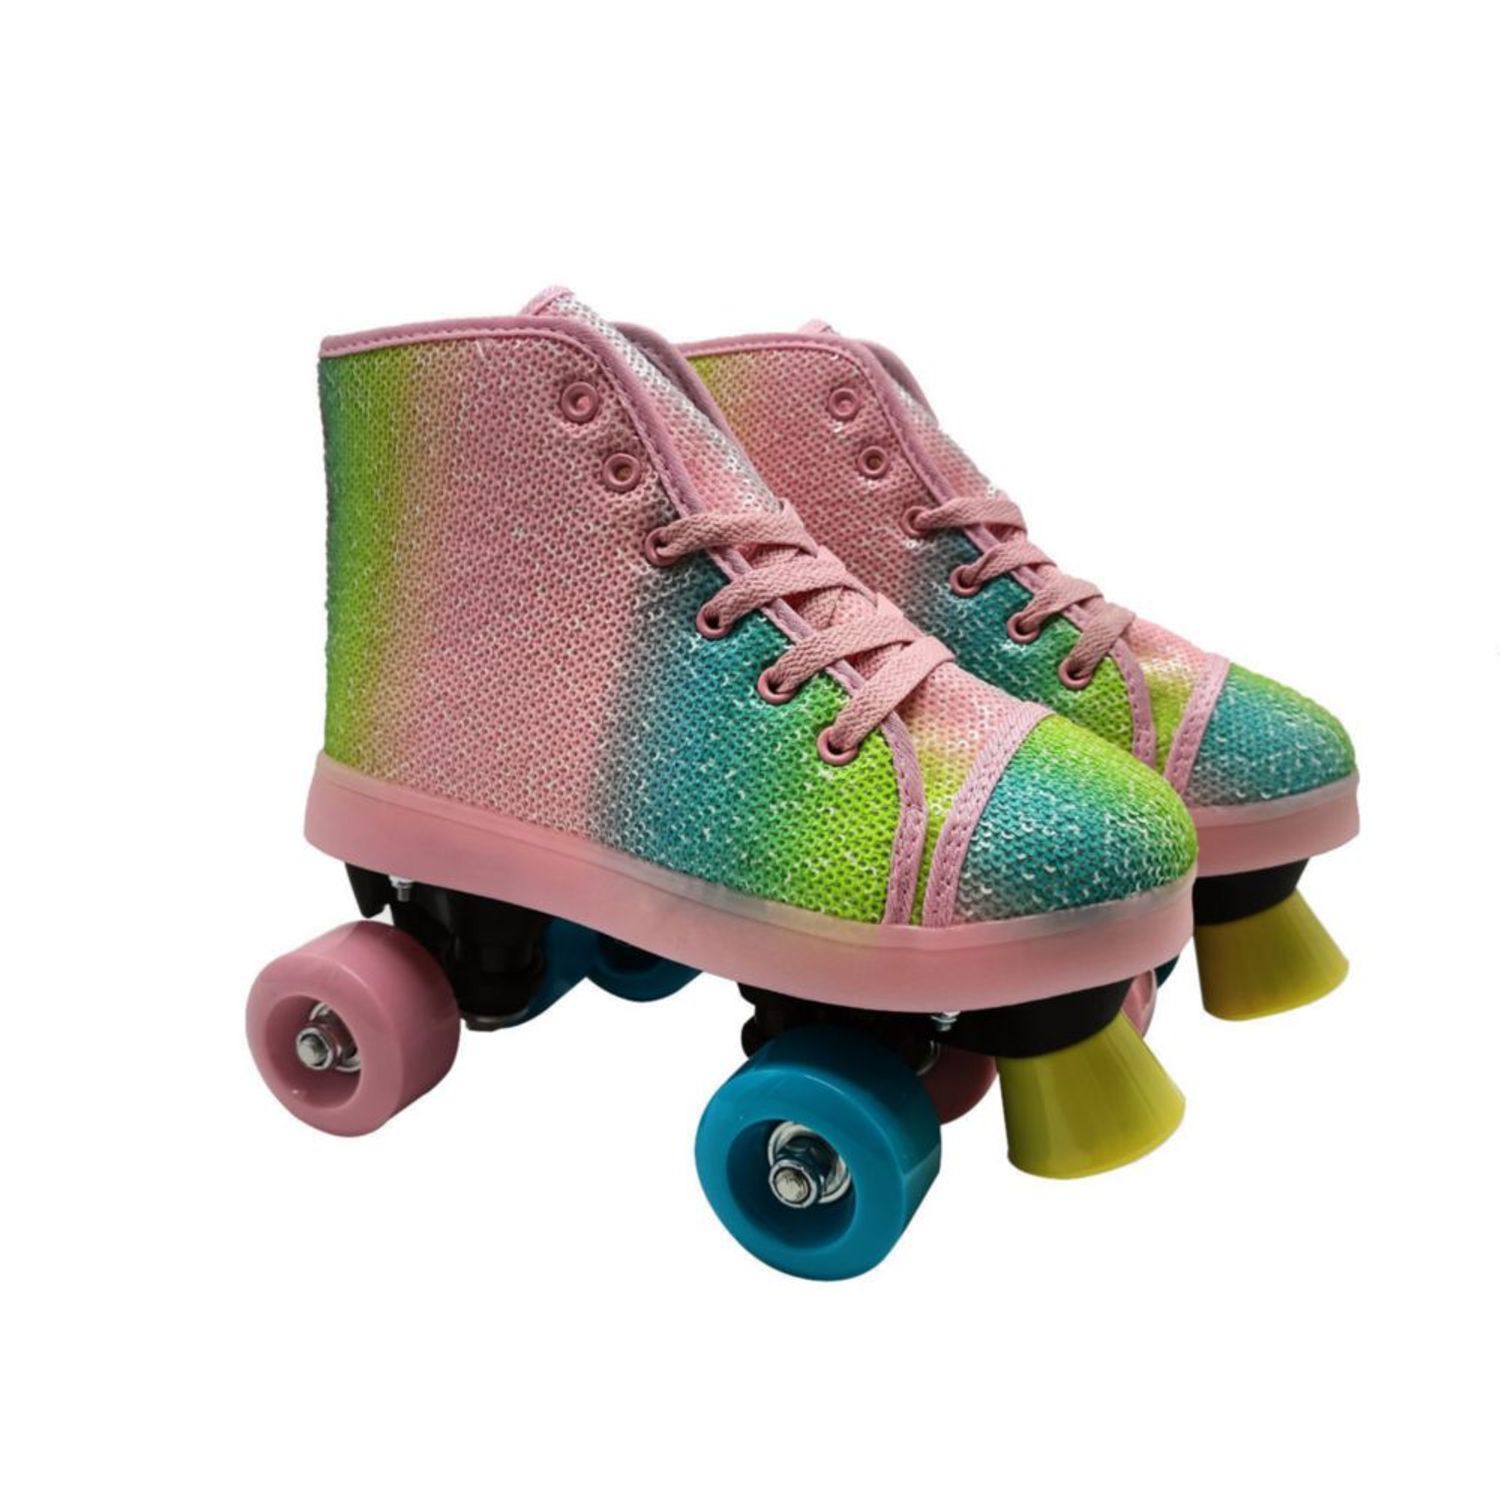 Patines Infantiles - Compra patines para niños aquí